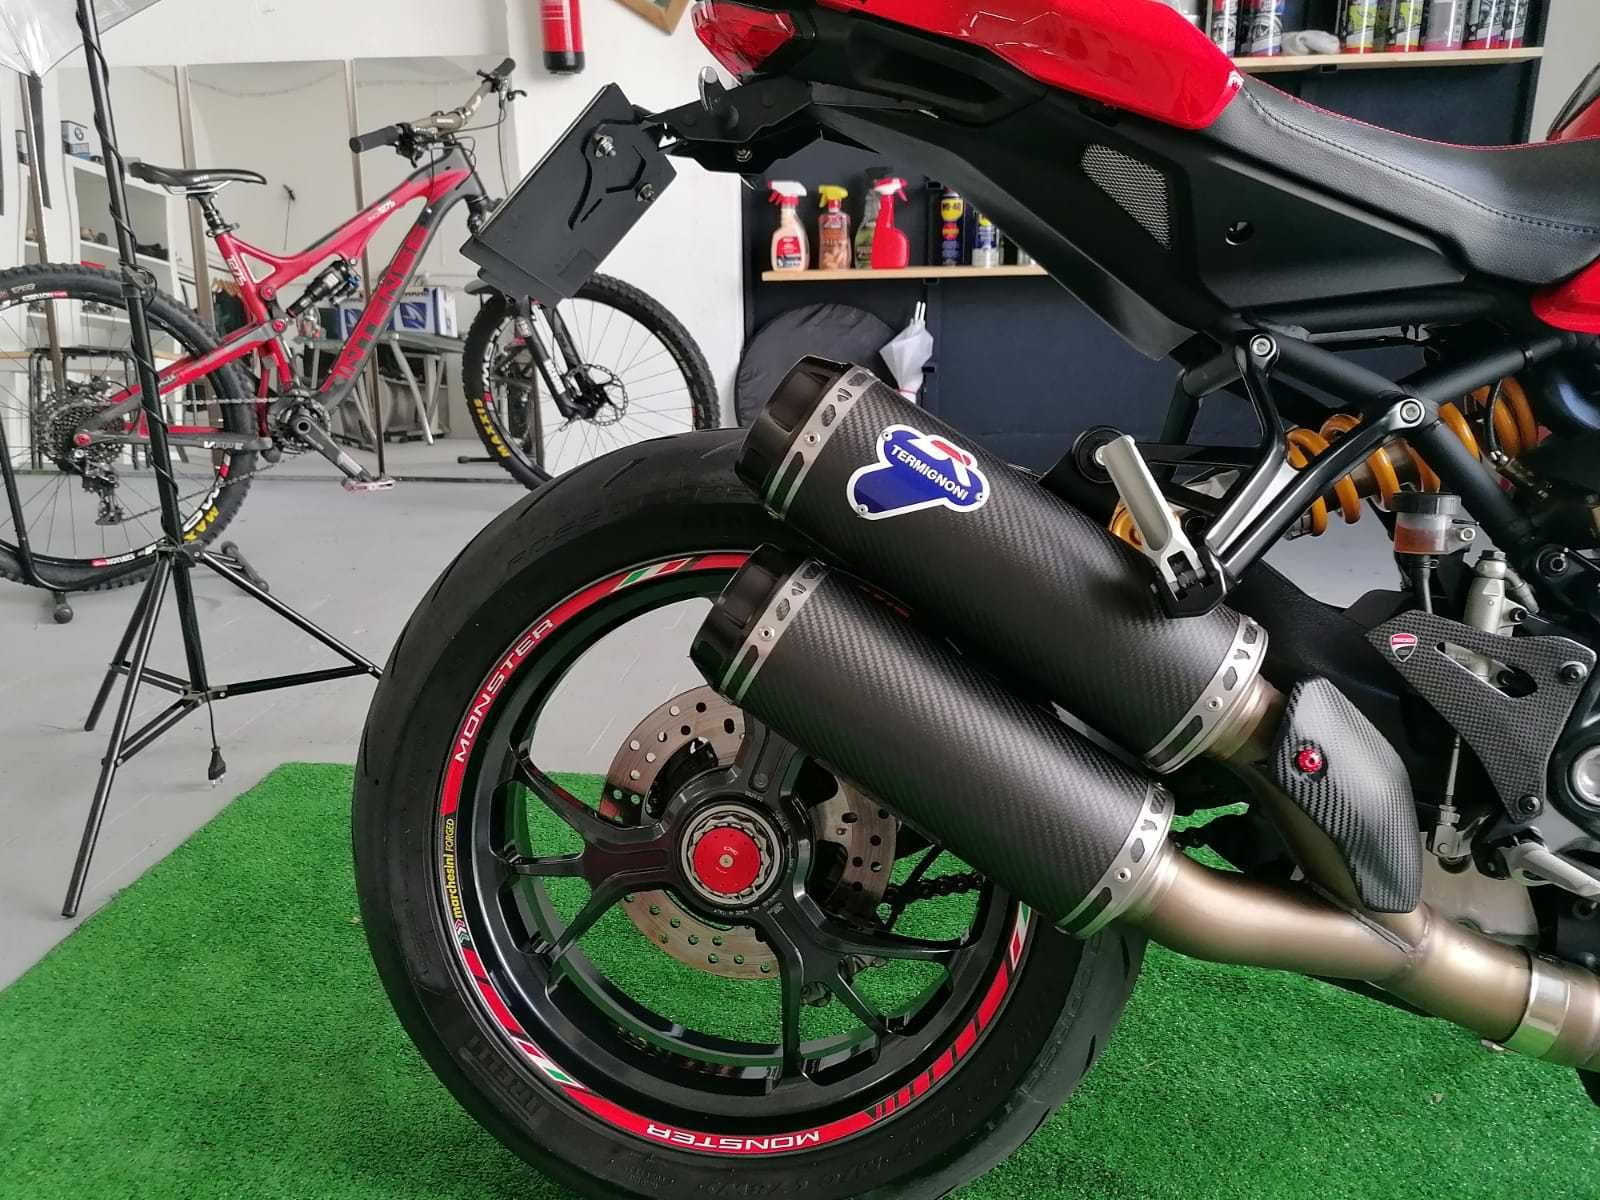 Ducati Monster 1200R, como nova , muitos extras! como nova.